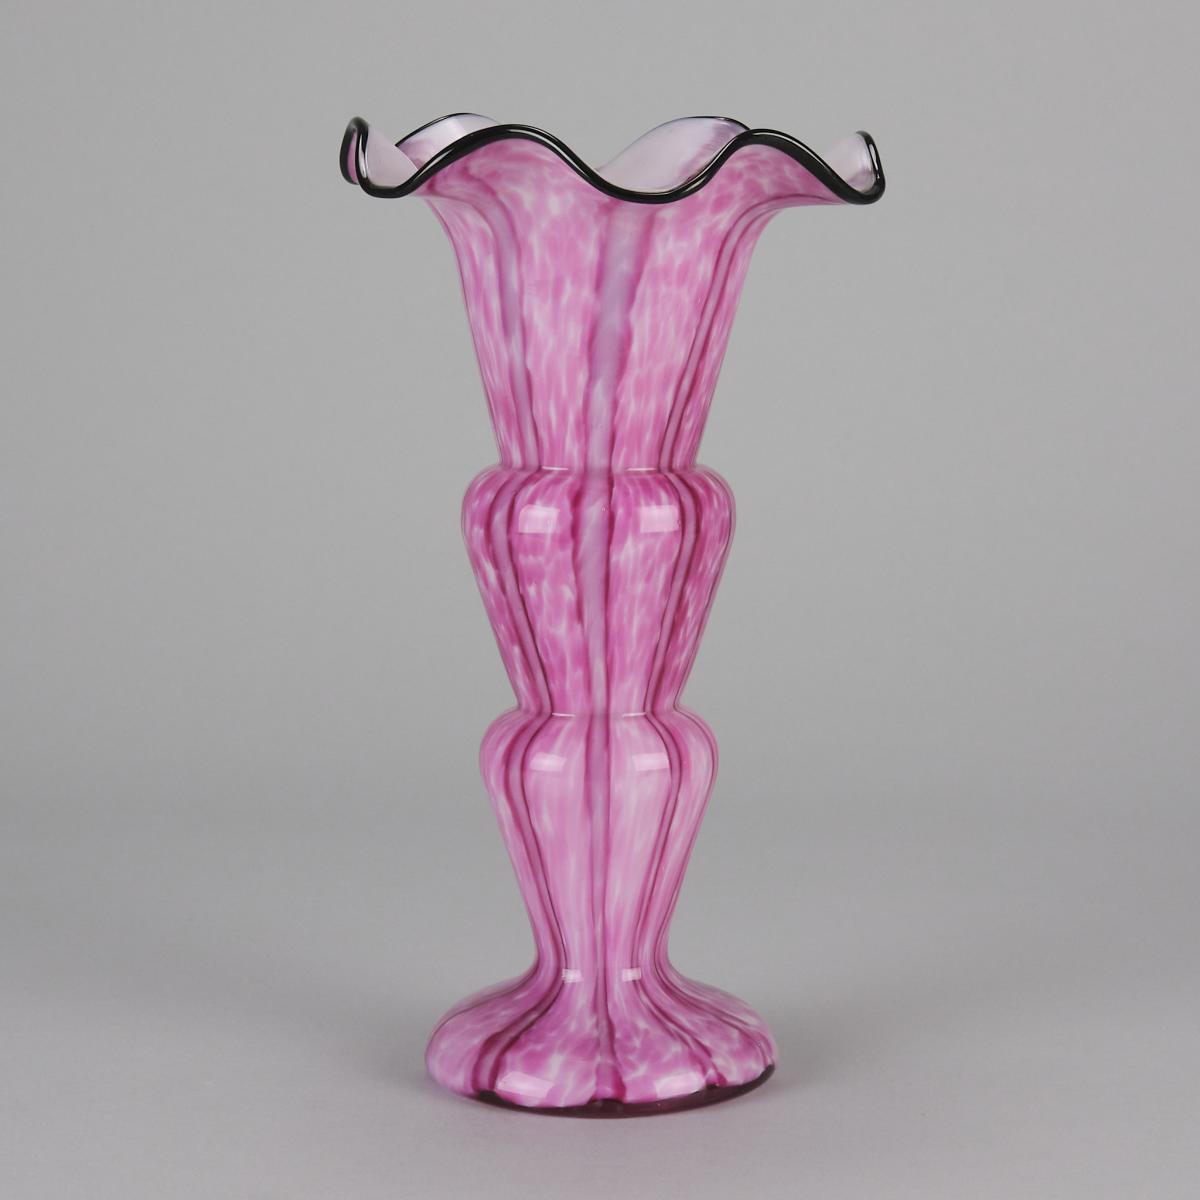 Coloured glass vase entitled "Trefoil Vase" by Franz Welz - Circa 1930